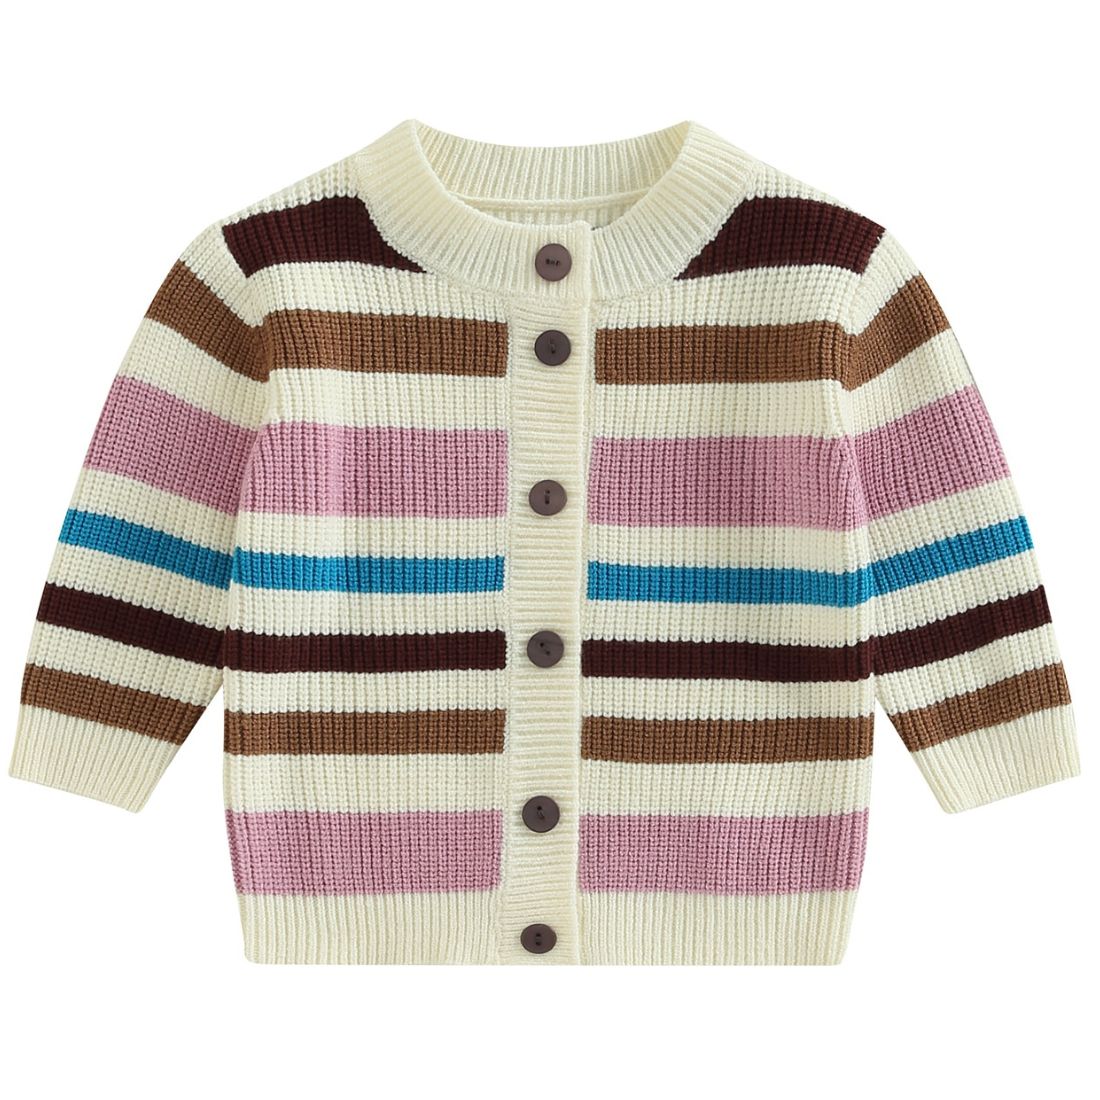 Striped Knit Toddler Cardigan